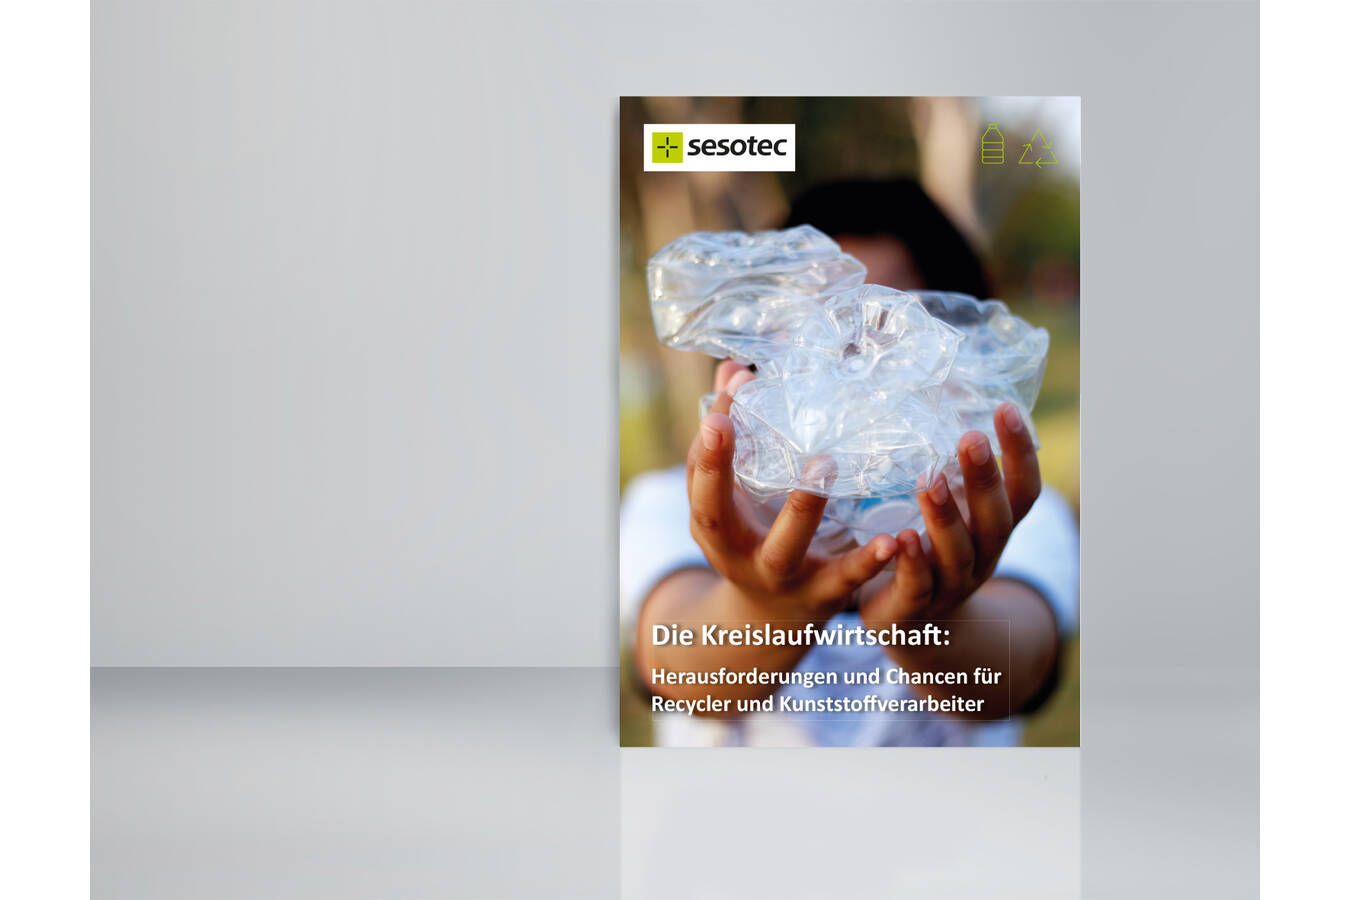 Das neue E-Book „Die Kreislaufwirtschaft“ von Sesotec: Geballte Informationen für Recycler, Hersteller und Verarbeiter von Kunststoffen (Bild: Sesotec GmbH)